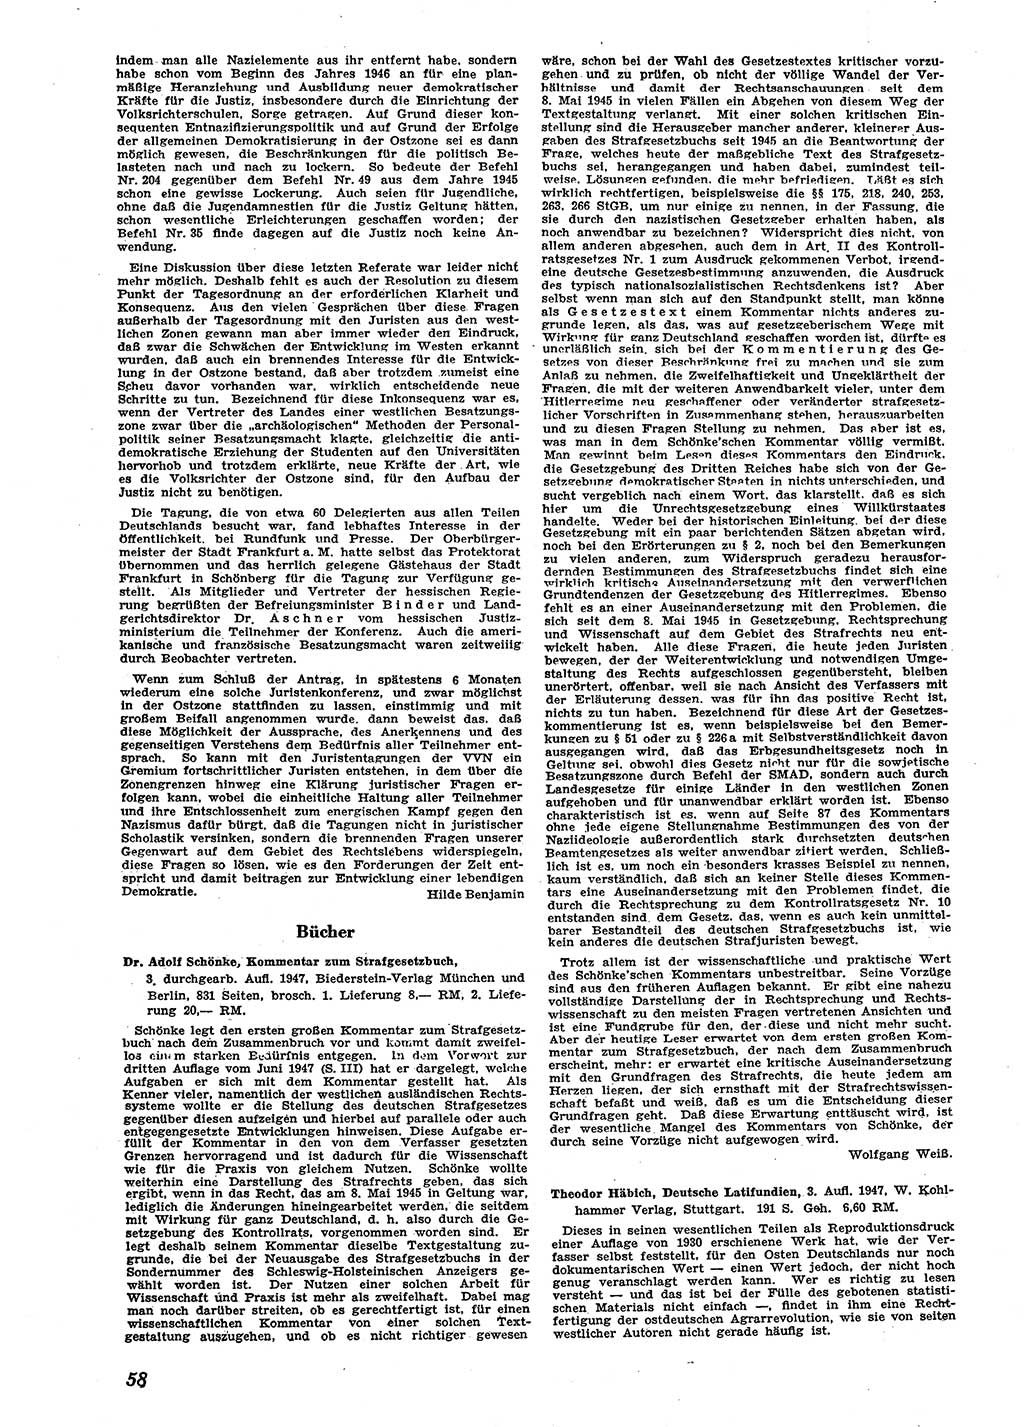 Neue Justiz (NJ), Zeitschrift für Recht und Rechtswissenschaft [Sowjetische Besatzungszone (SBZ) Deutschland], 2. Jahrgang 1948, Seite 58 (NJ SBZ Dtl. 1948, S. 58)